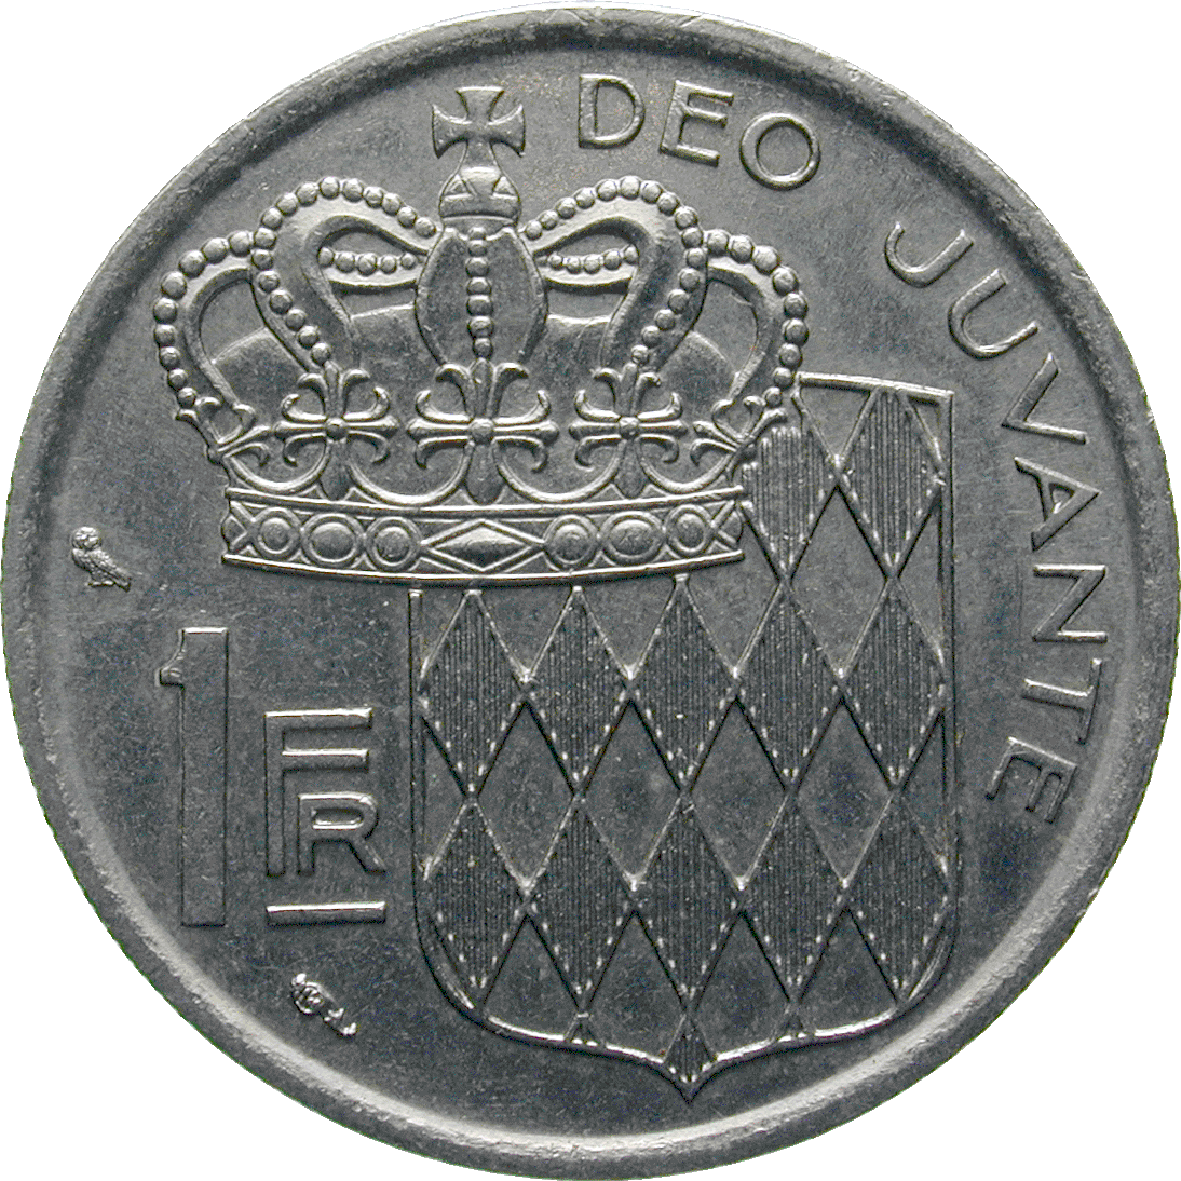 Fürstentum Monaco, Rainer III., 1 Franc 1968 (reverse)